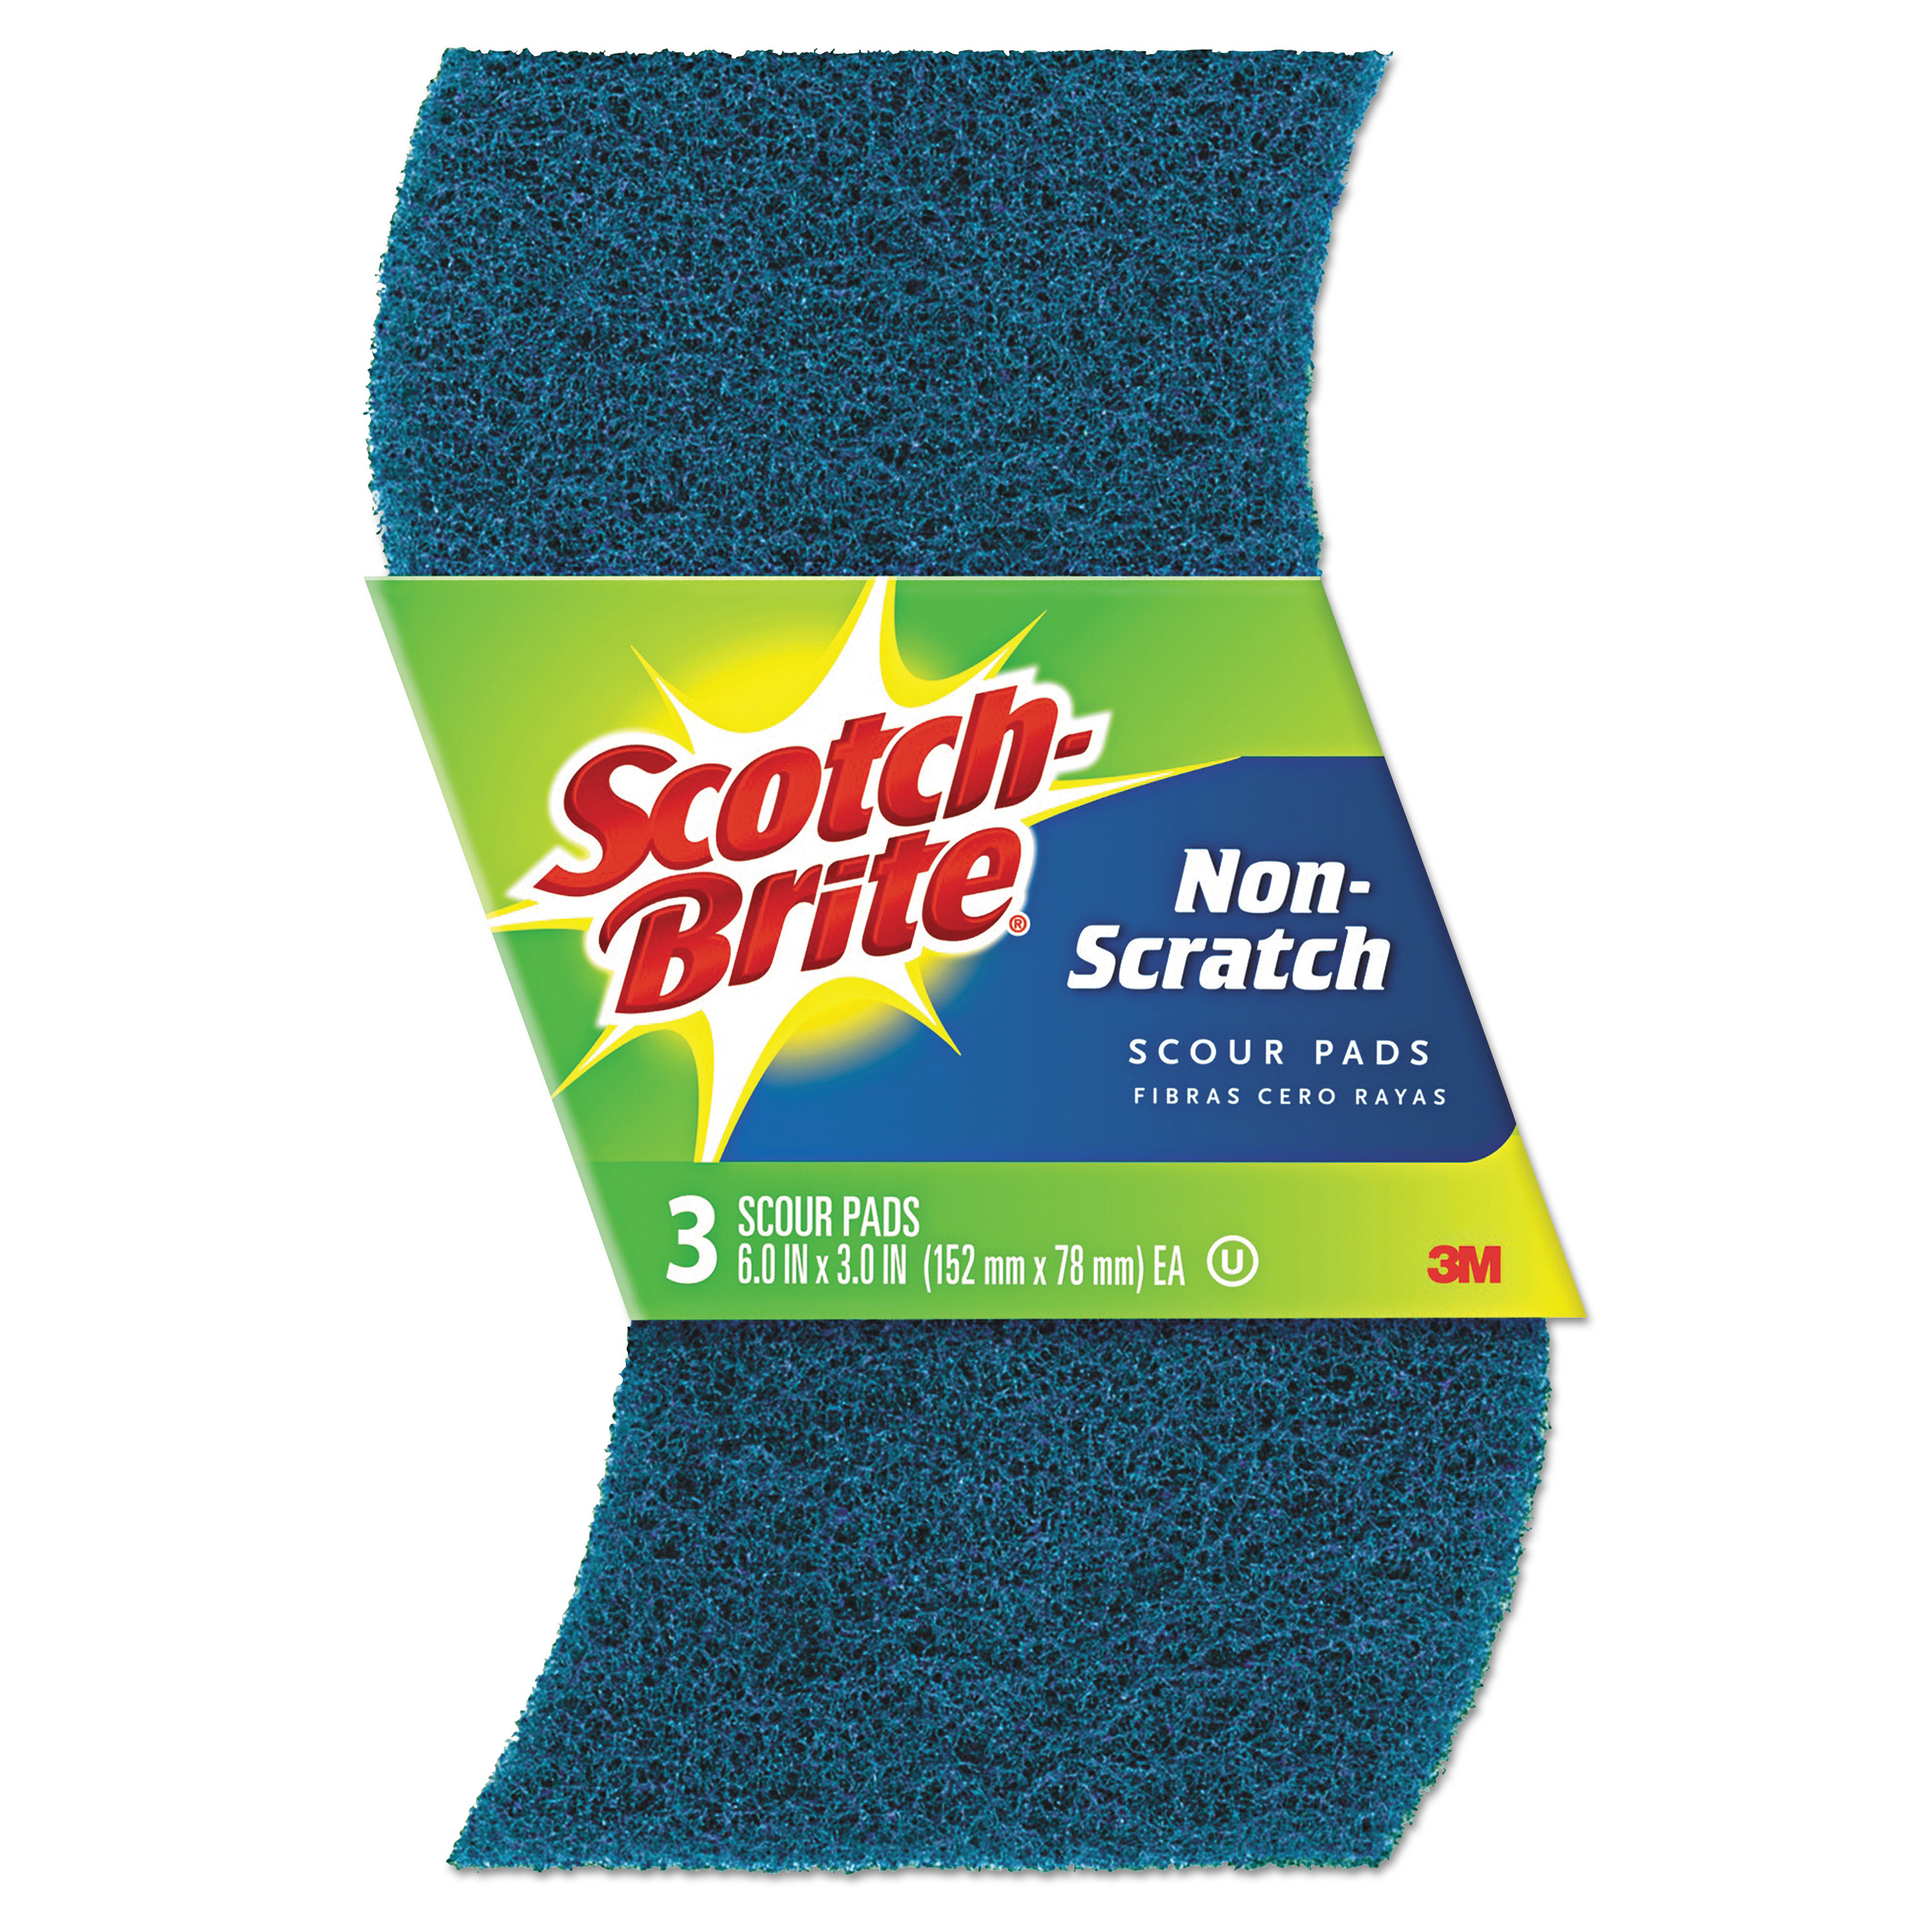  Scotch-Brite 62310 Non-Scratch Scour Pads, Size 3 x 6, Blue, 10/Carton (MMM62310) 